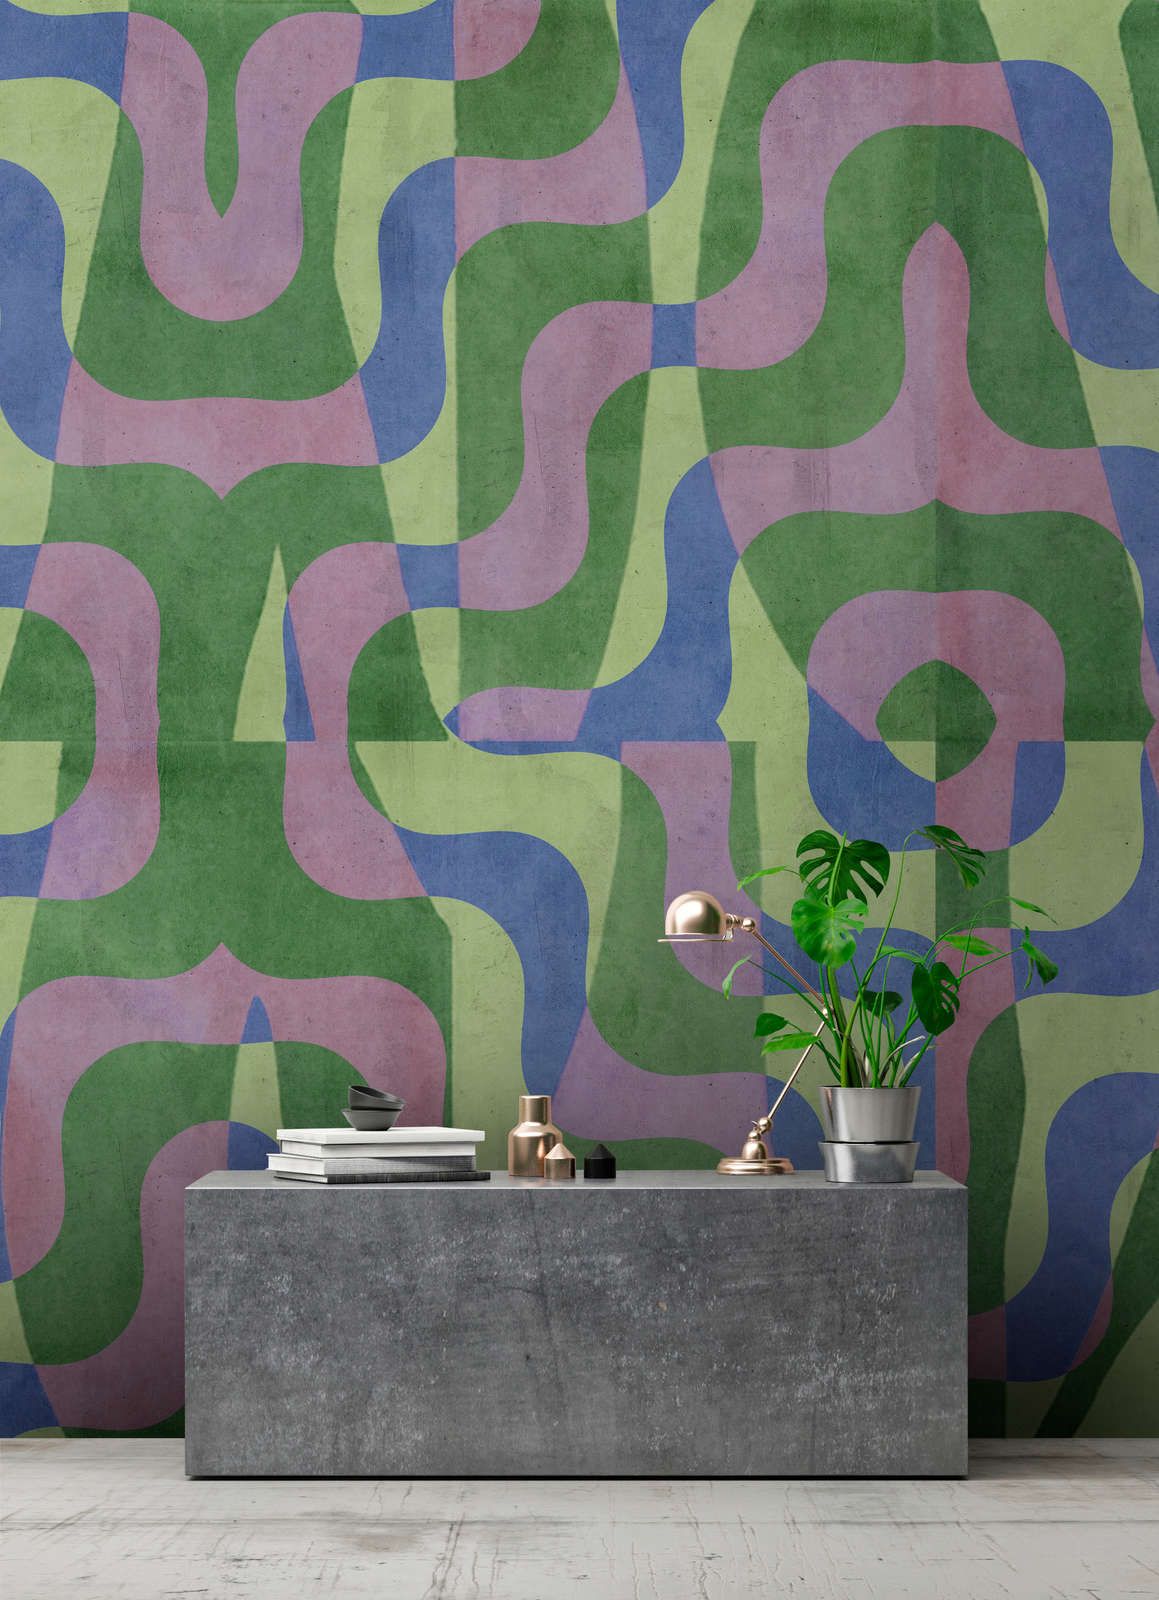             Digital behang »viola« - Abstract retro patroon voor betonpleister look - Groen, blauw, paars | Licht structuurvlies
        